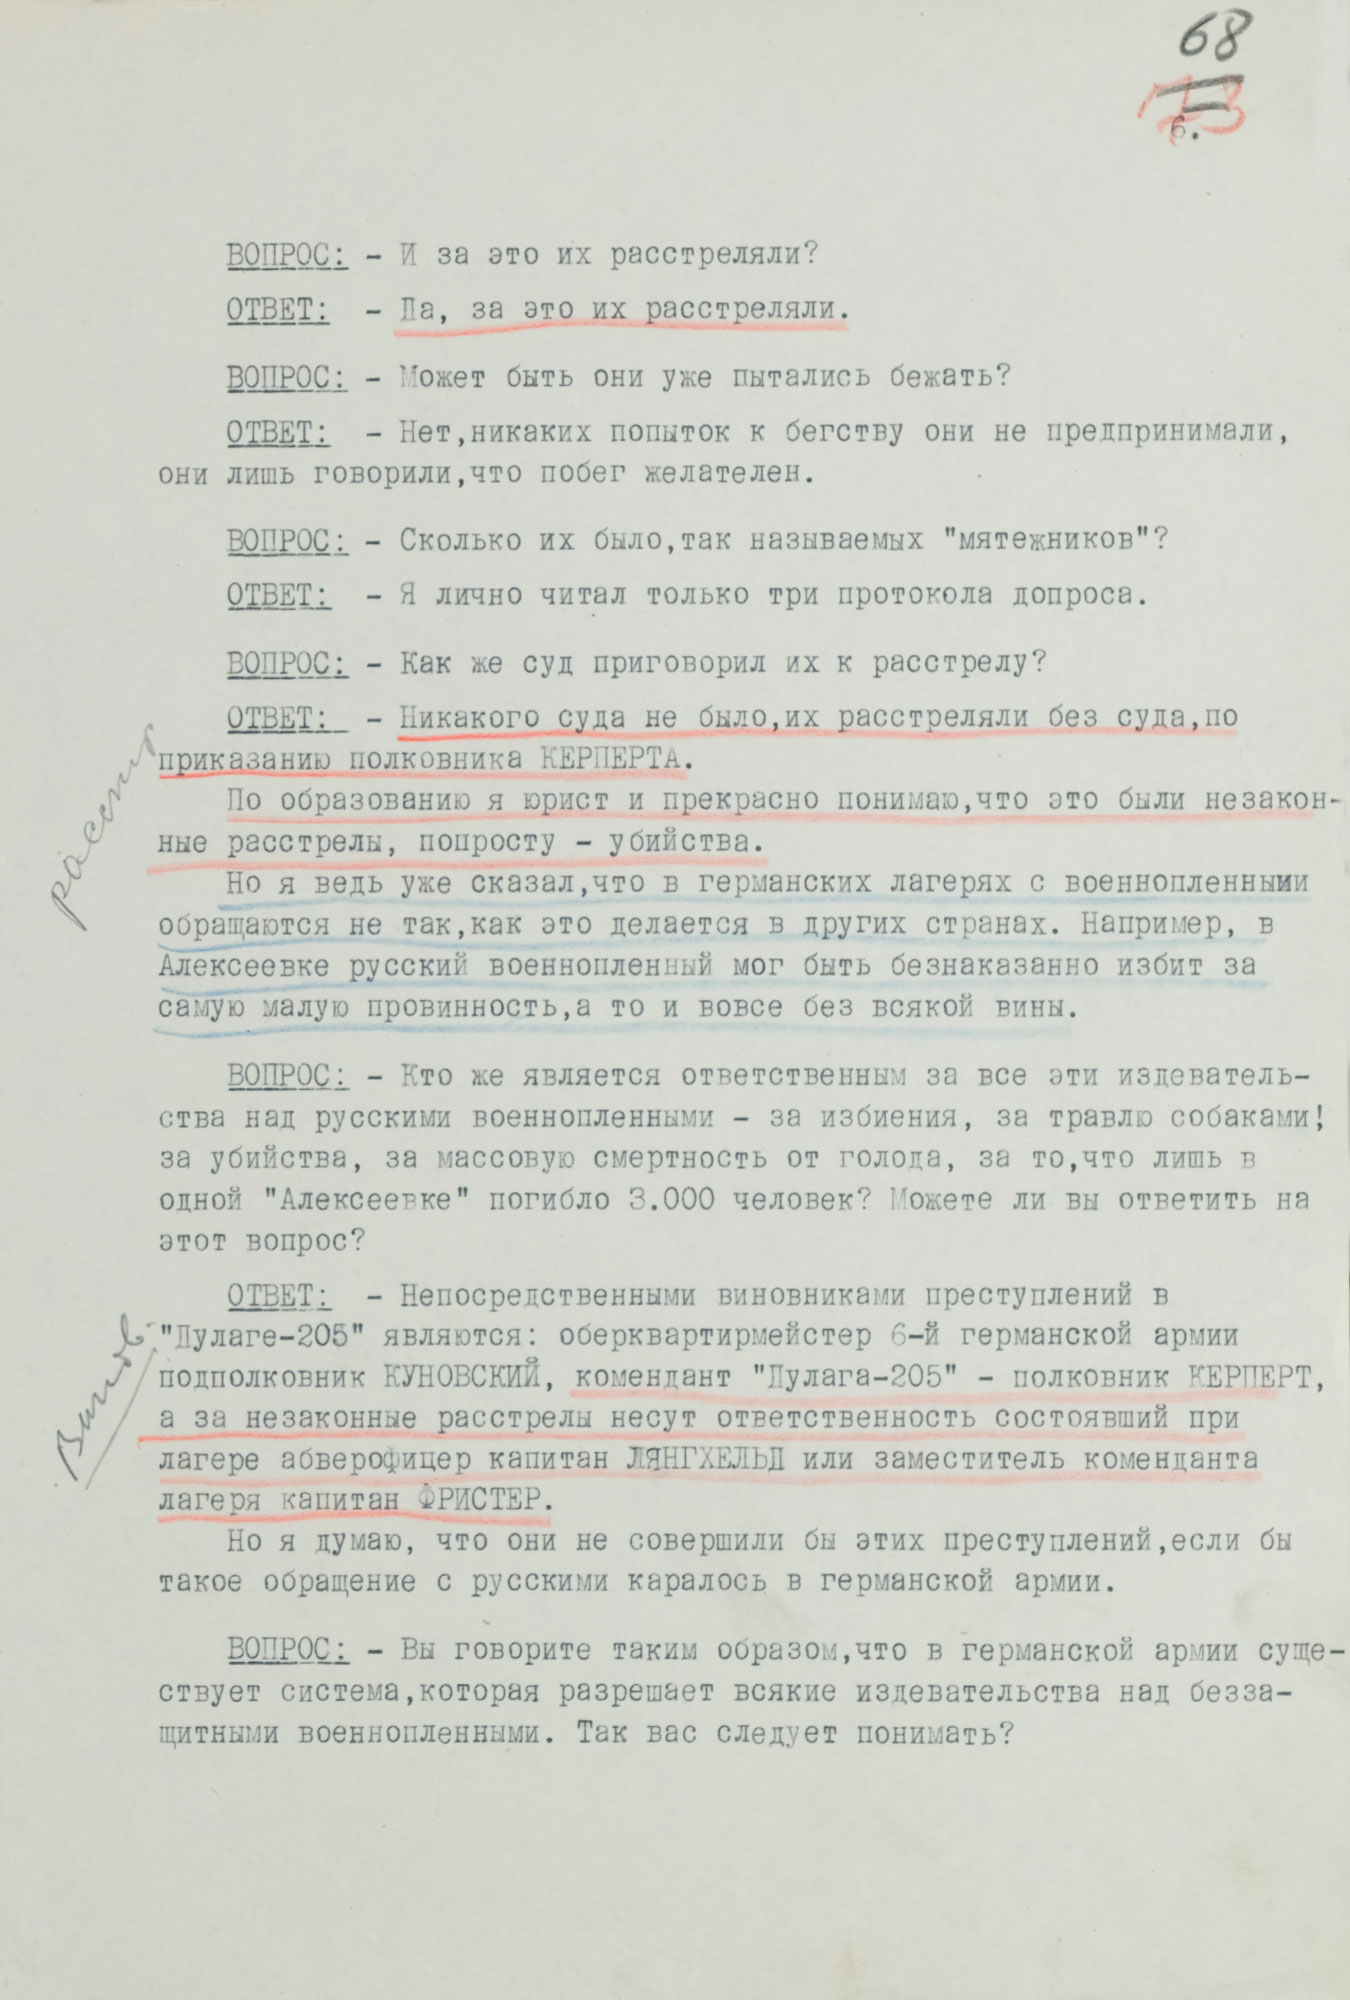 Протокол допроса военнопленного обер-лейтенанта германской армии МЕДЕРА Отто, адъютанта коменданта «Дулаг-205». 27 августа 1943 г. Страница 6